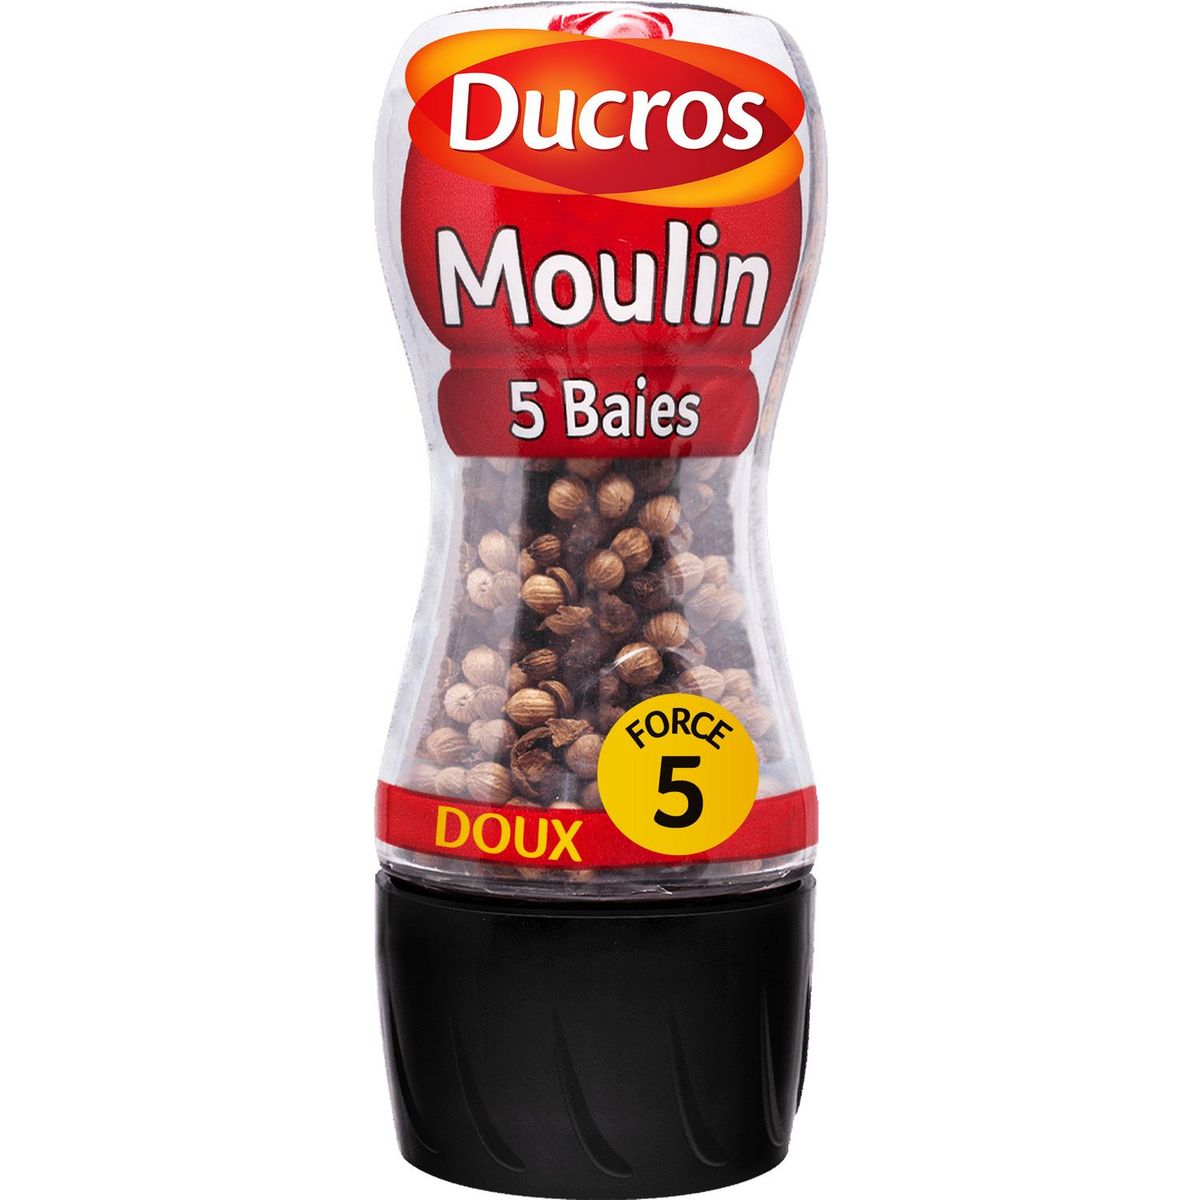 DUCROS Moulin poivre 5 baies doux force 5 24g pas cher 